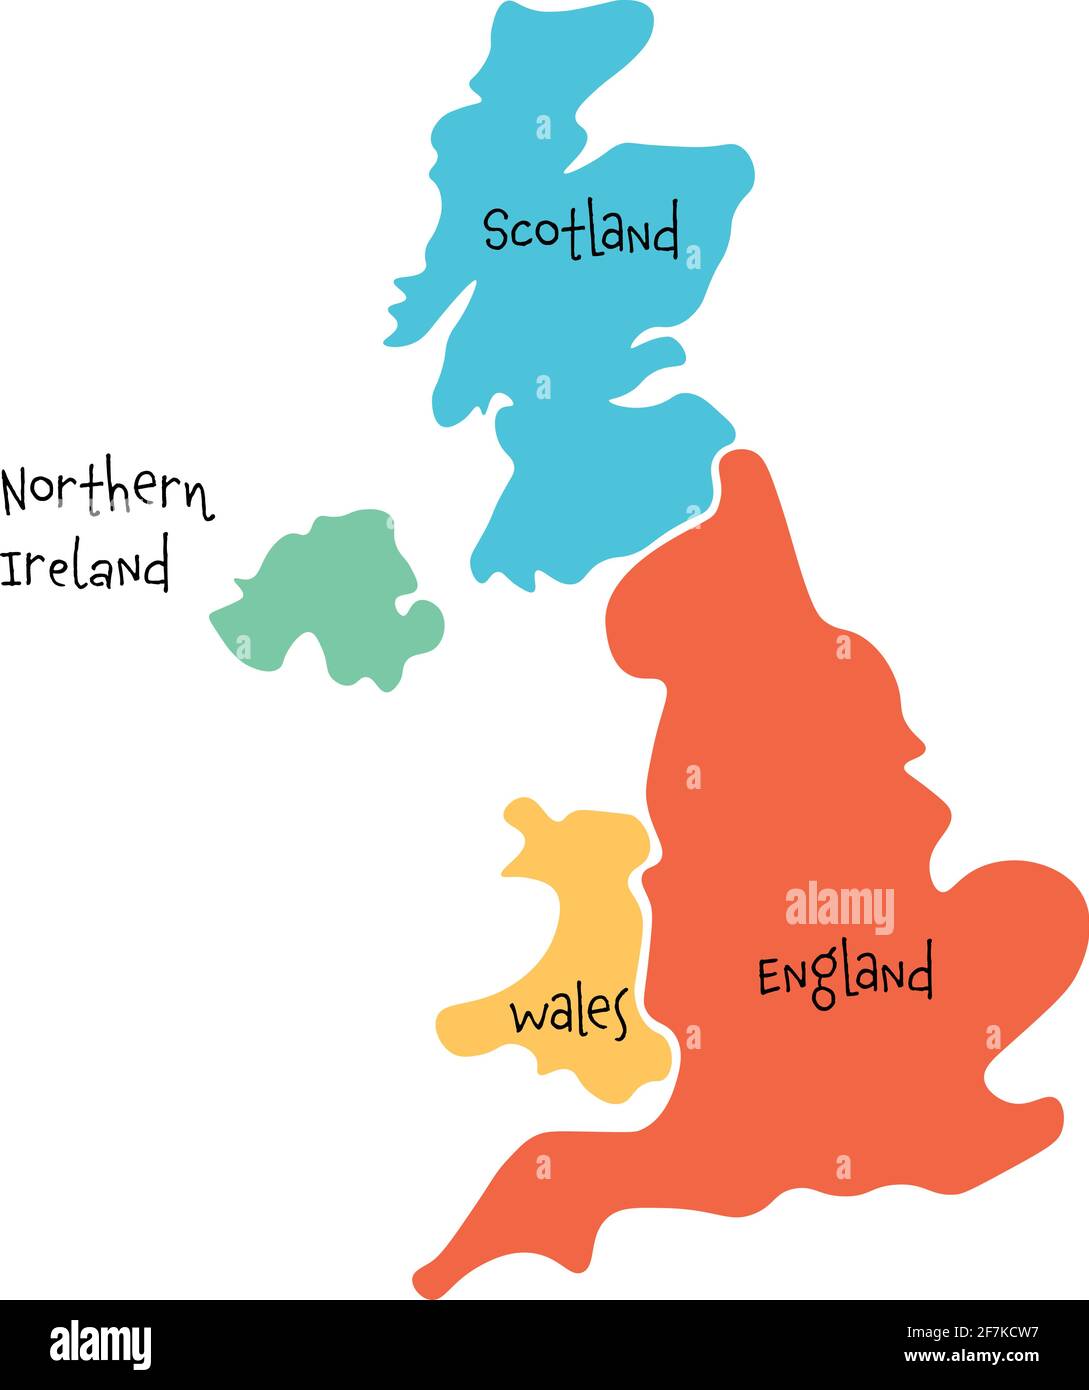 Regno Unito, noto anche come Regno Unito, della Gran Bretagna e dell'Irlanda del Nord, mappa vuota disegnata a mano. Diviso in quattro paesi: Inghilterra, Galles, Scozia e NI Illustrazione Vettoriale